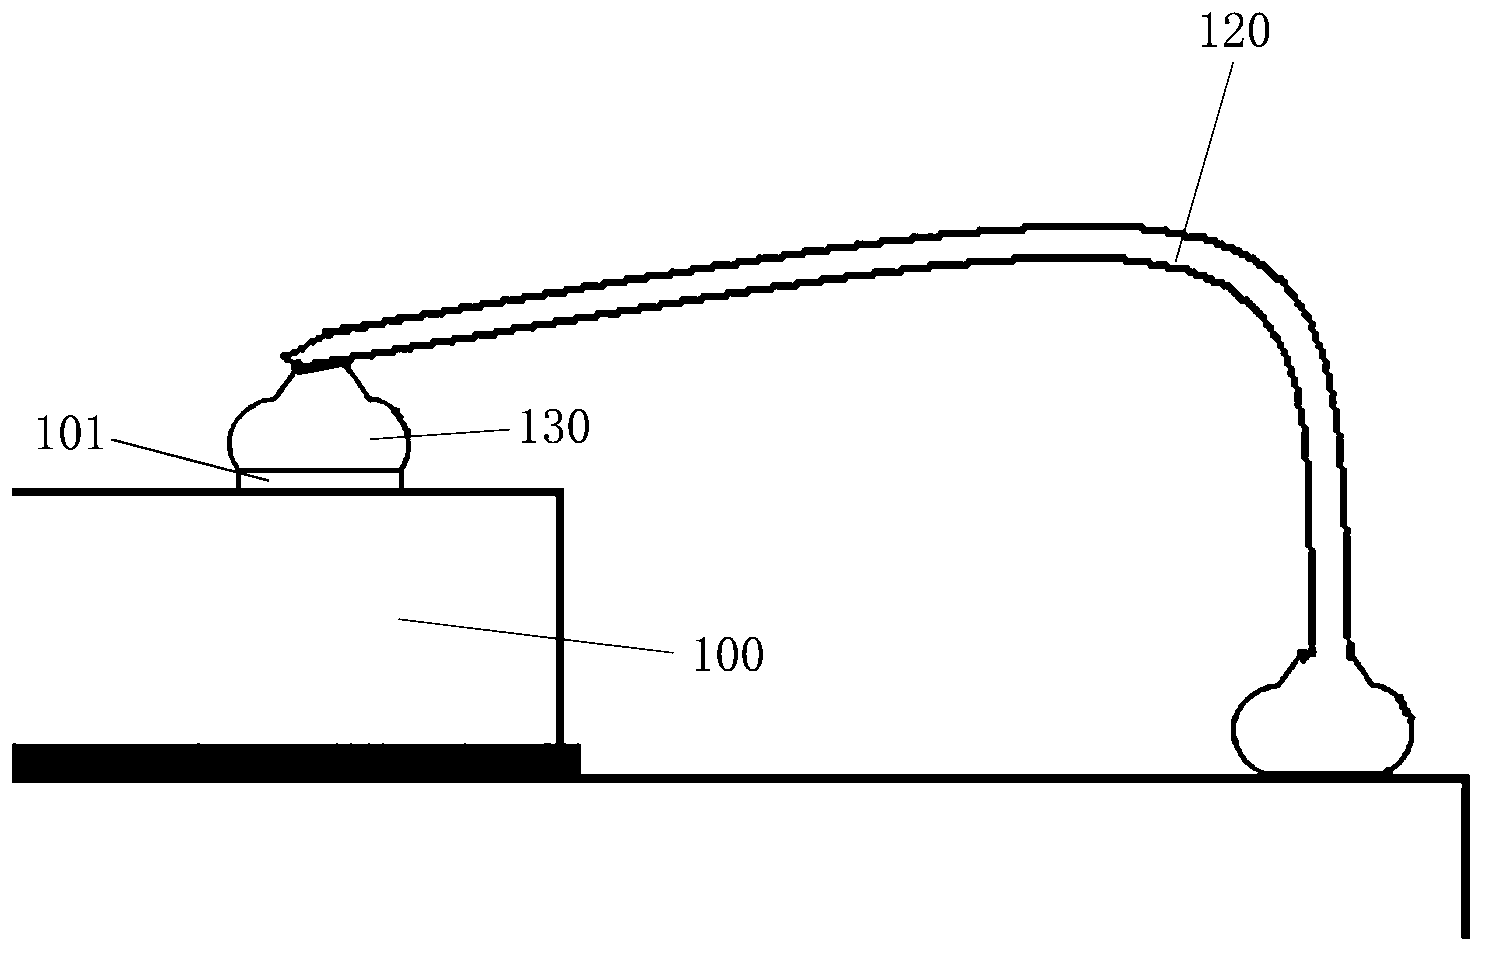 Convex spot wire bonding method